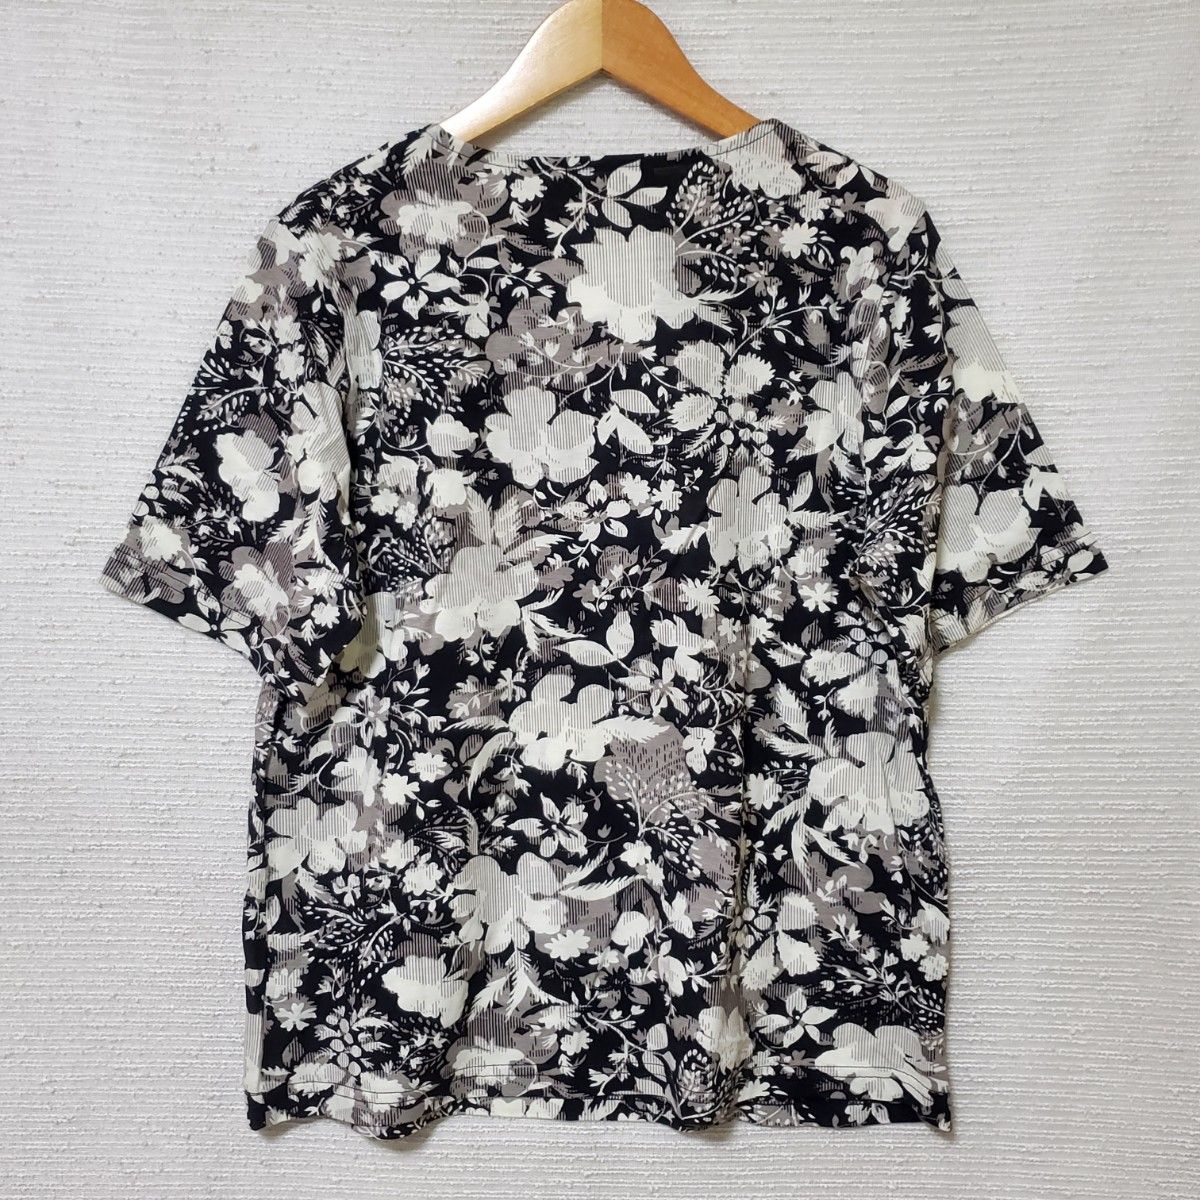 curriere 半袖 Tシャツ カットソー 新品 レディース Lサイズ 日本製 フラワー 花柄 ブラック 黒 総柄 半袖Tシャツ